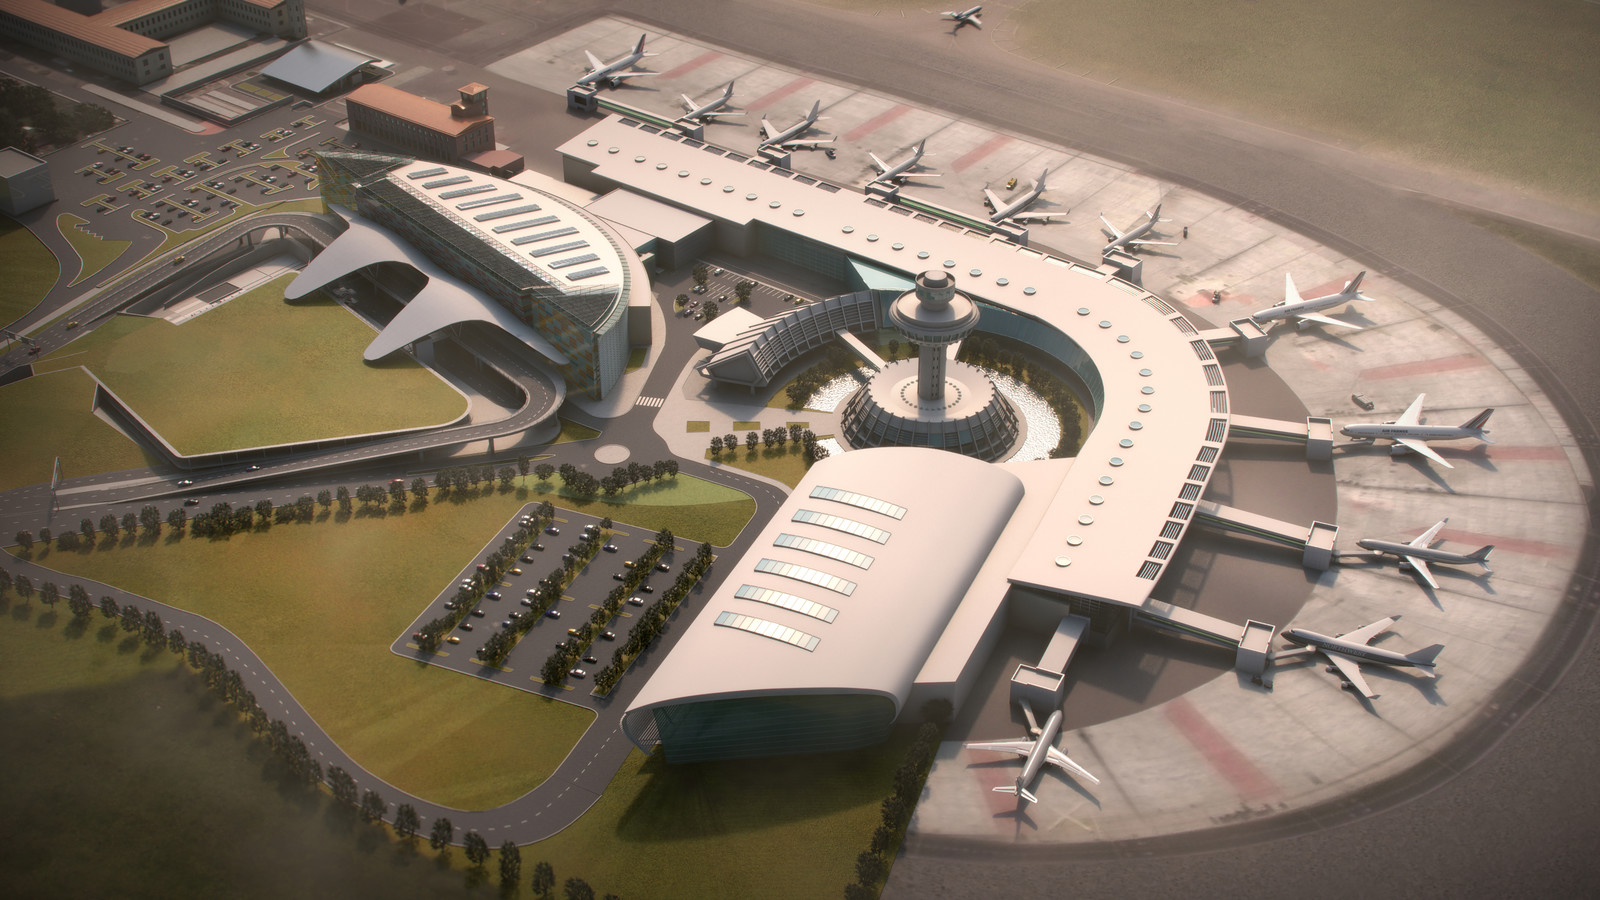 Сайт аэропорта звартноц. Звартноц аэропорт 2022. Площадь аэропорта Звартноц. Аэропорт Звартноц 2022 года. Первоначальный проект Звартноц аэропорт.